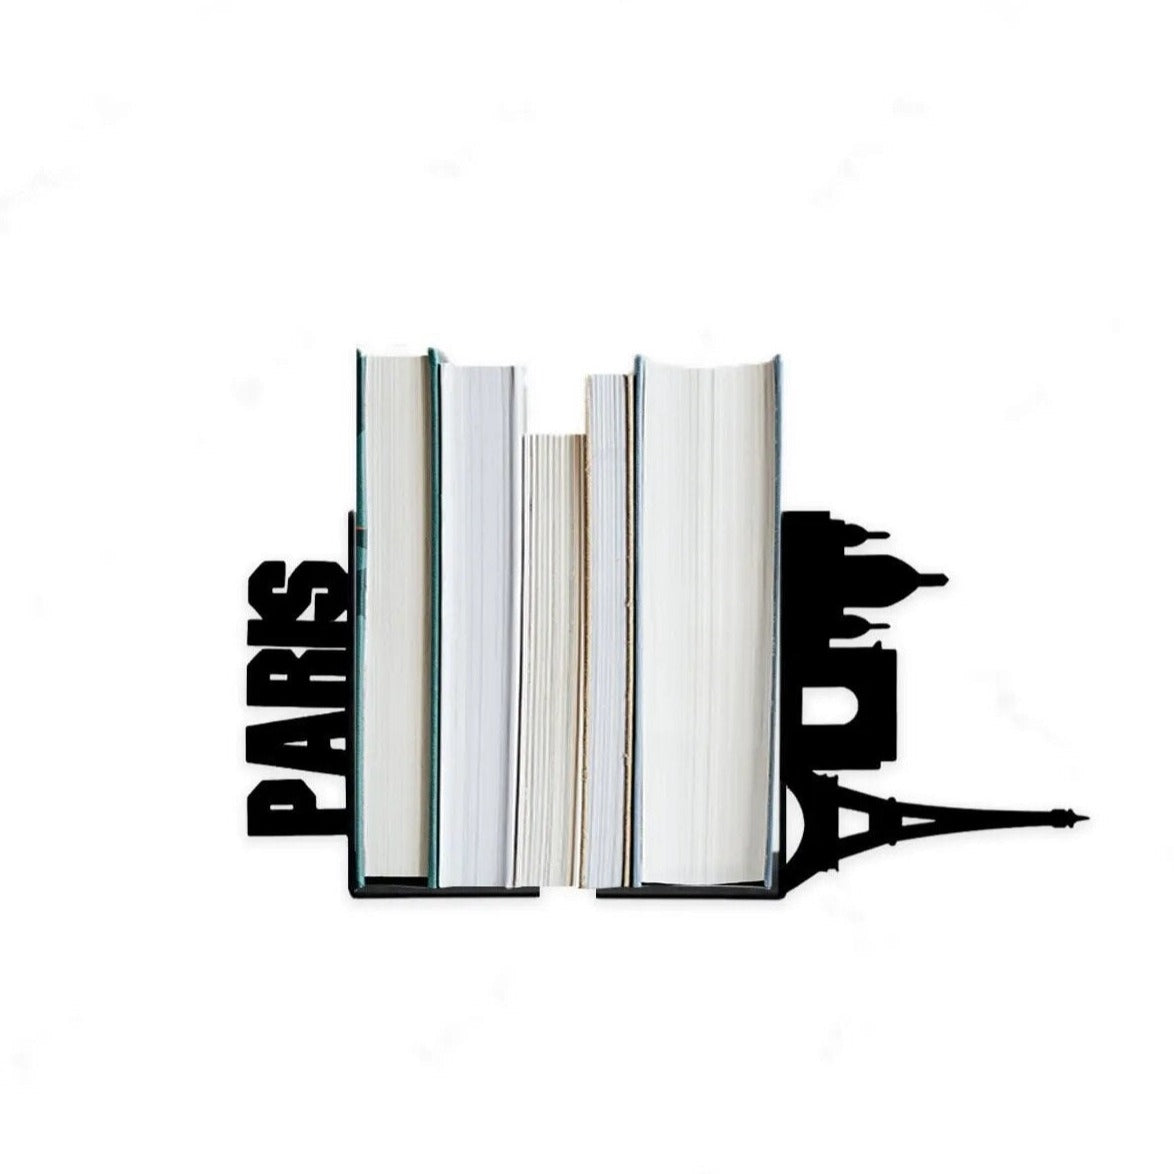 Serre-Livre-Ombre-Paris1serre-livres3256804189609248-Paris